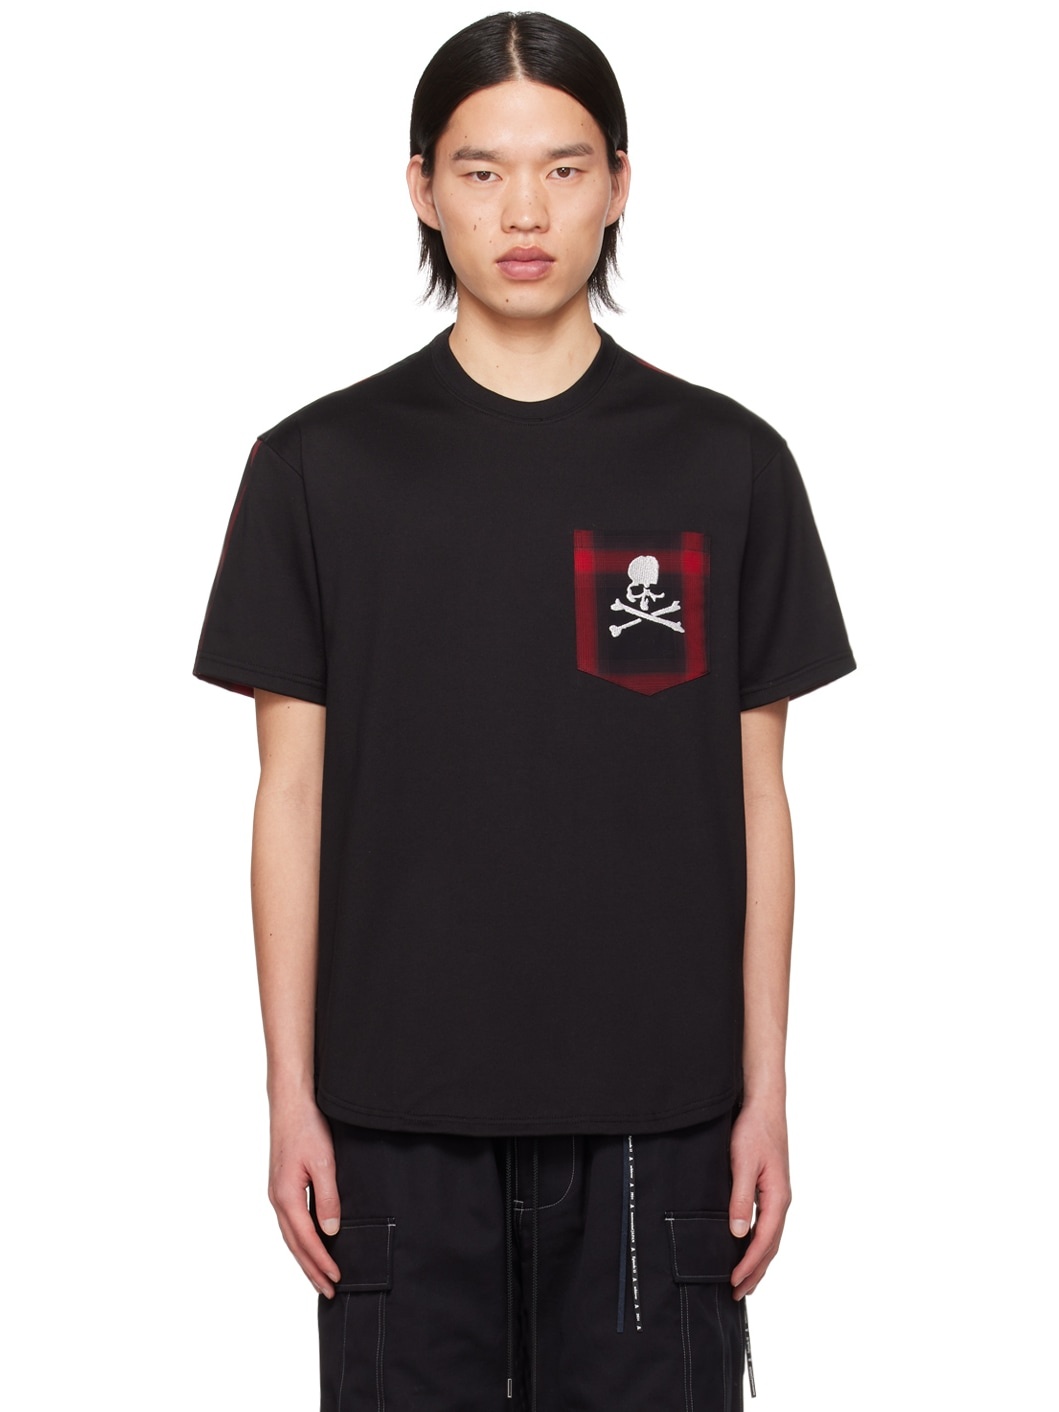 Black & Red Check T-Shirt - 1